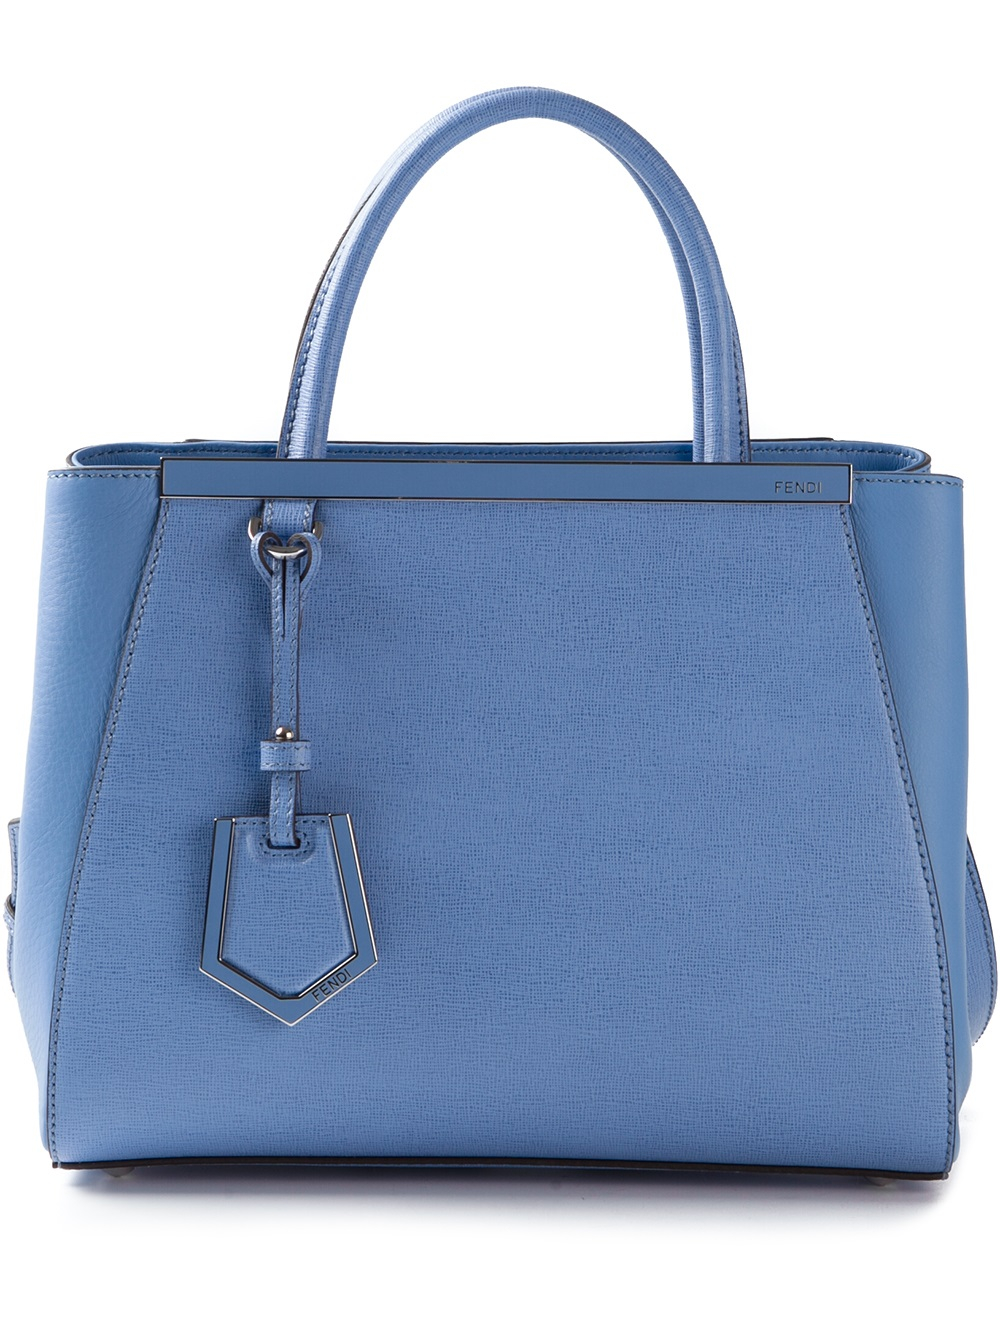 Fendi 2jours Vitello Elite Medium Tote Bag in Turquoise (Blue) - Lyst